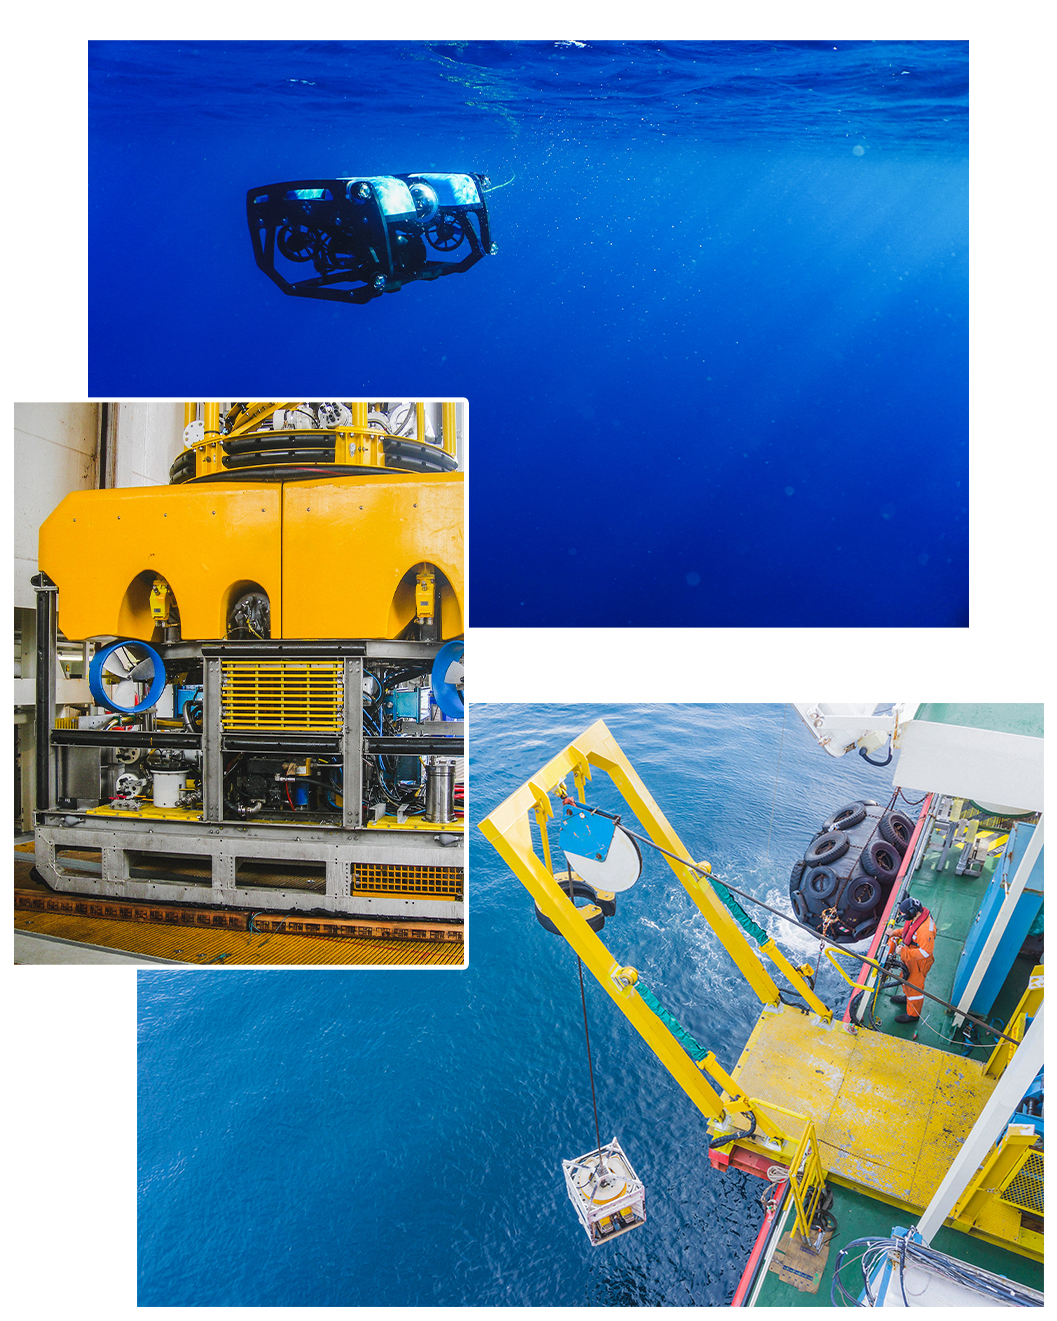 In alto, un BlueROV2 in acqua; al centro, un particolare di un grande ROV giallo; in basso, un ROV calato in acqua tramite un sistema di lancio e recupero (LARS).